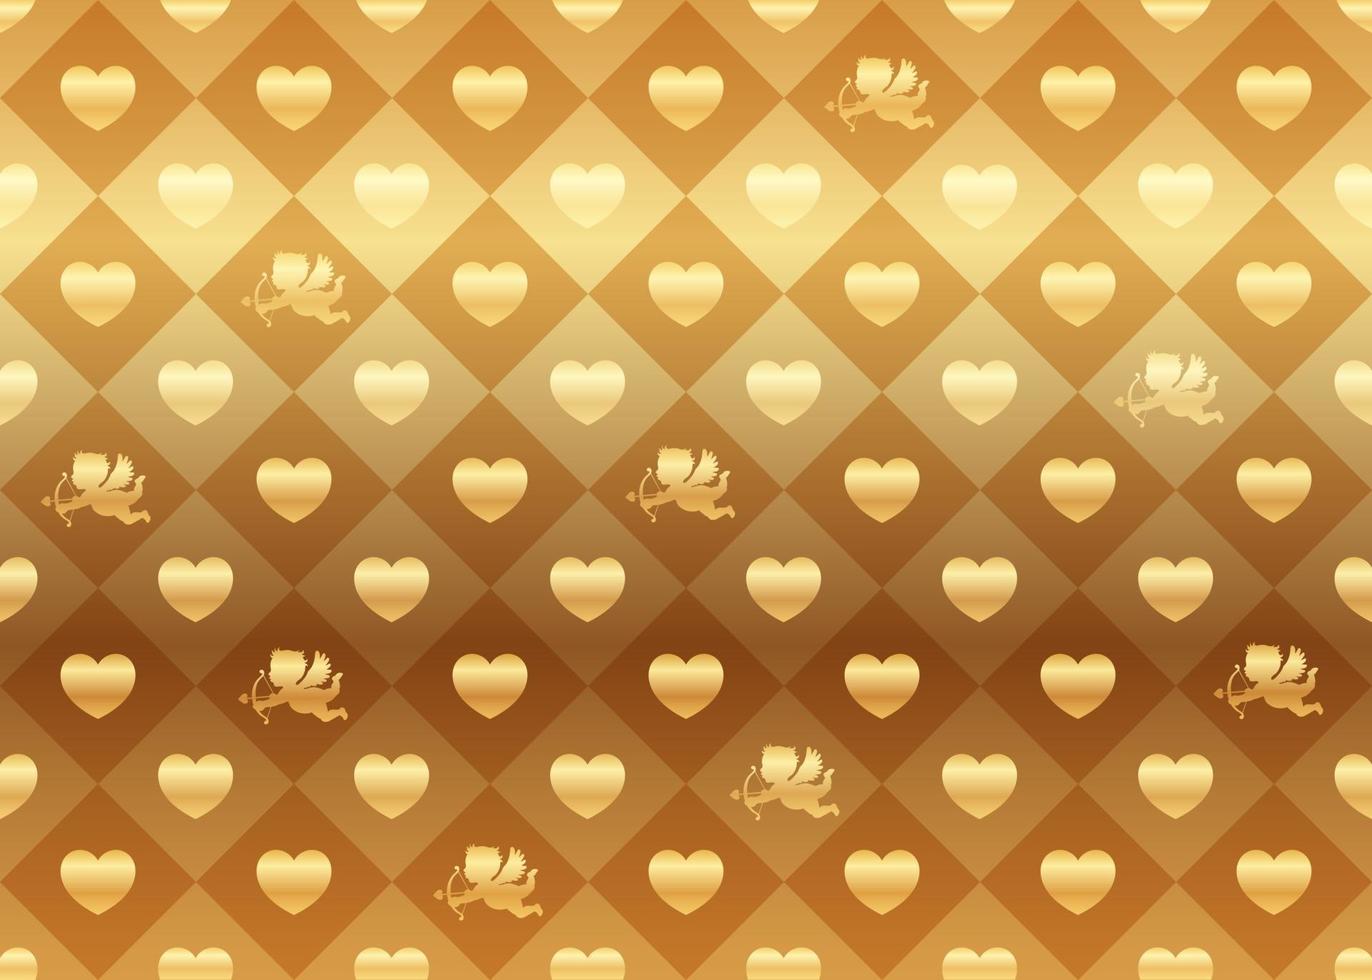 illustrazione di sfondo vettoriale senza cuciture ripetibile orizzontalmente e verticalmente di san valentino con forme di cuore d'oro e amorini